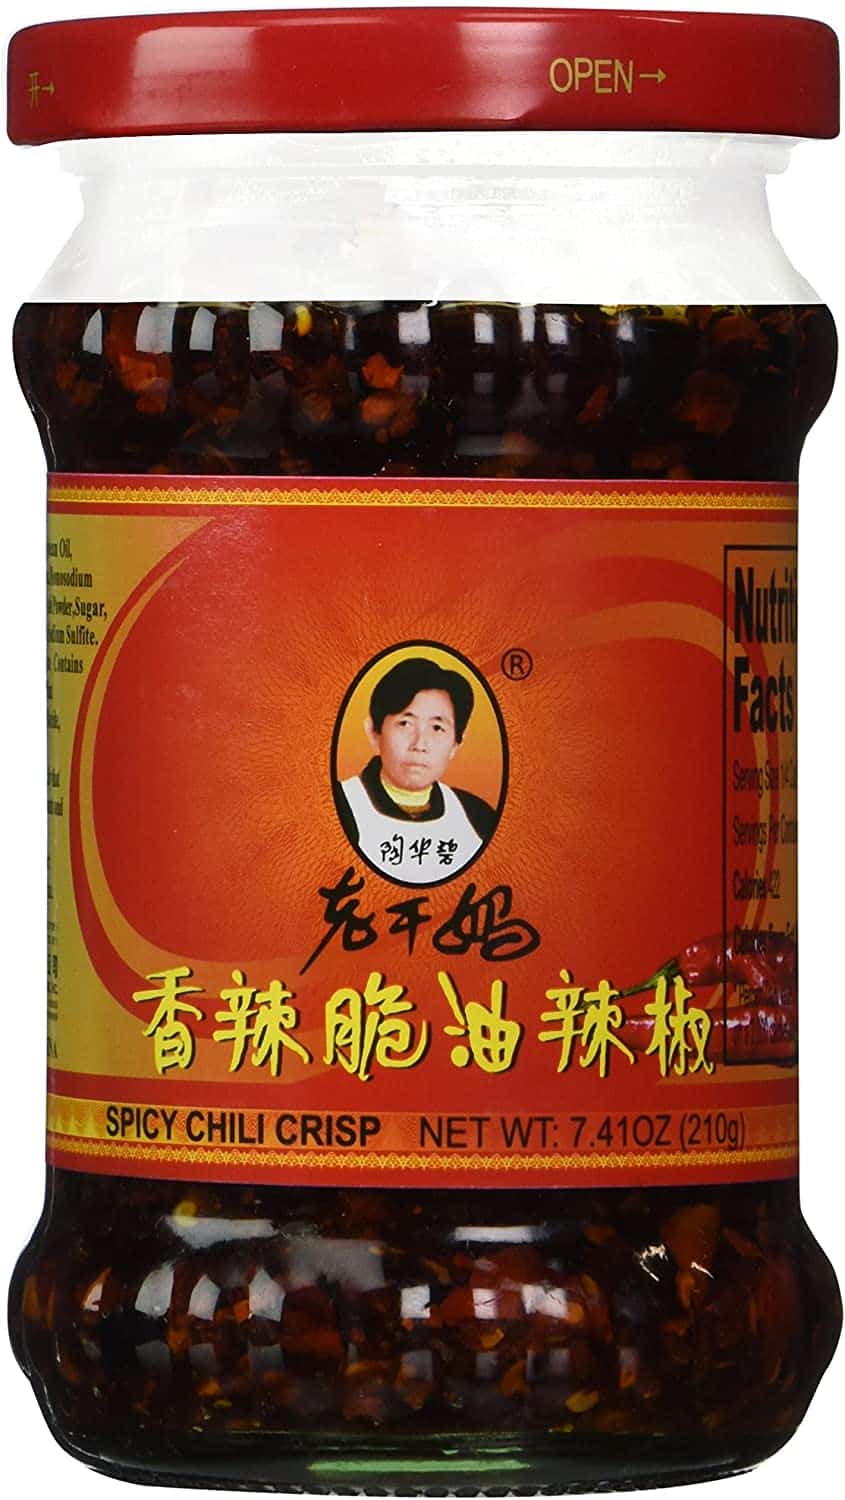 Ren Dao Mei Spicy Chili Crisp (Chili Oil Sauce